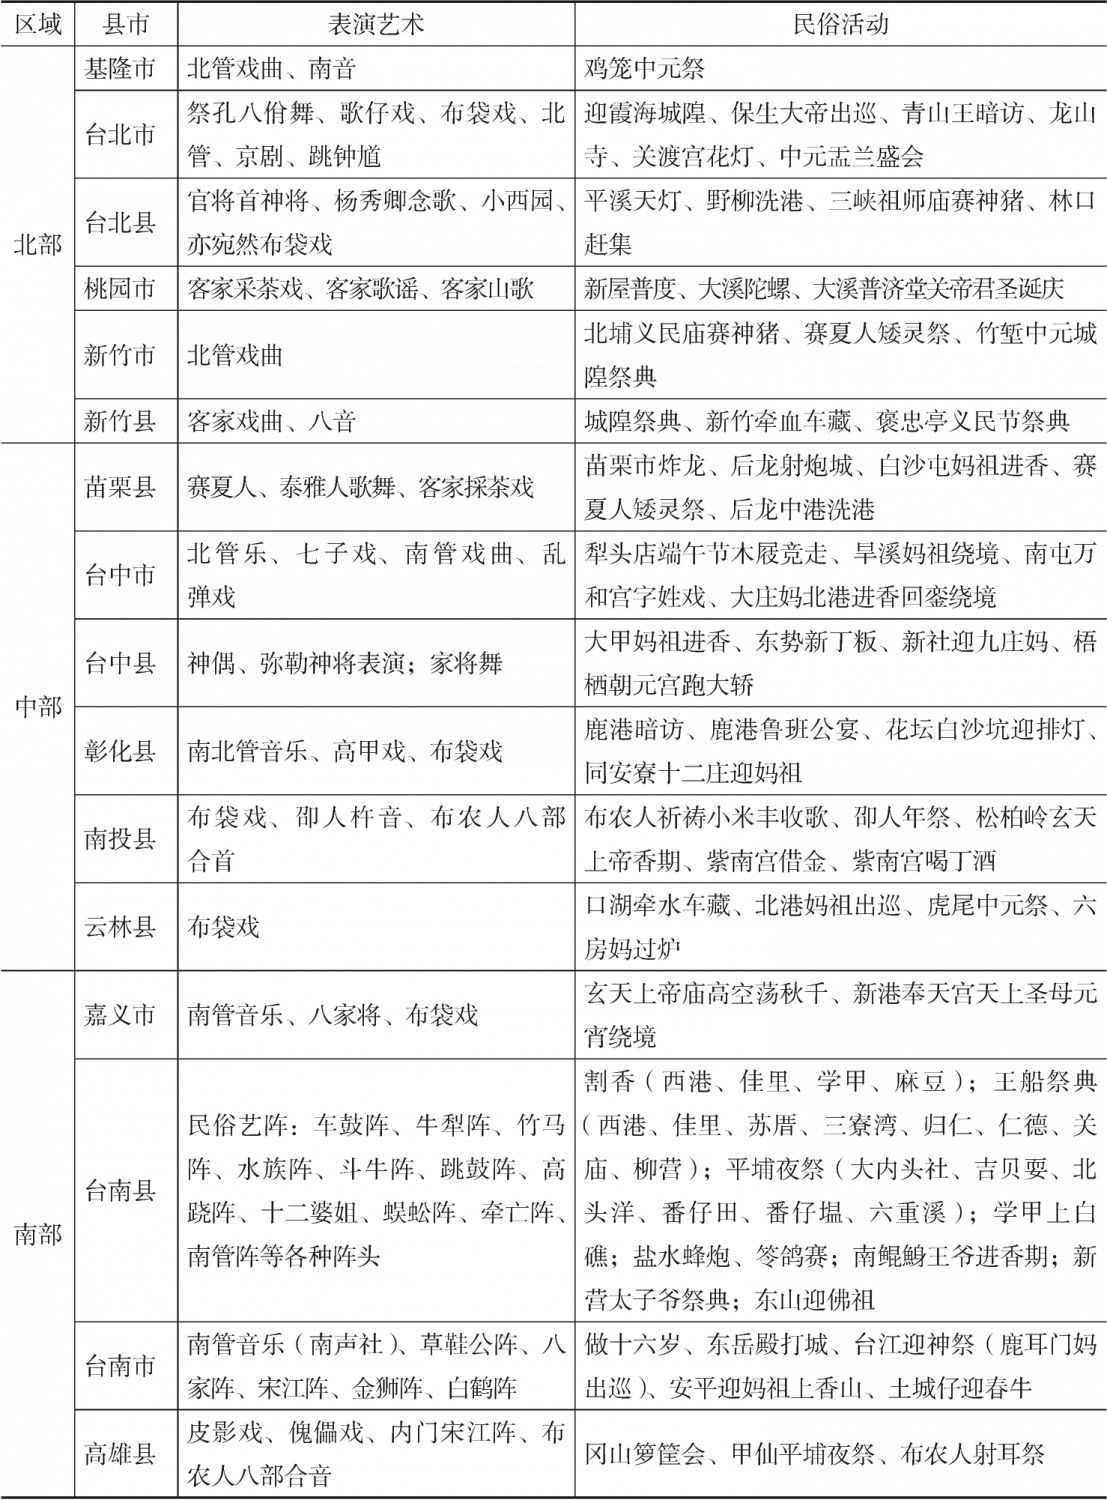 表4-1 台湾已列入保护名录的民俗活动及其民俗表演艺术分布*